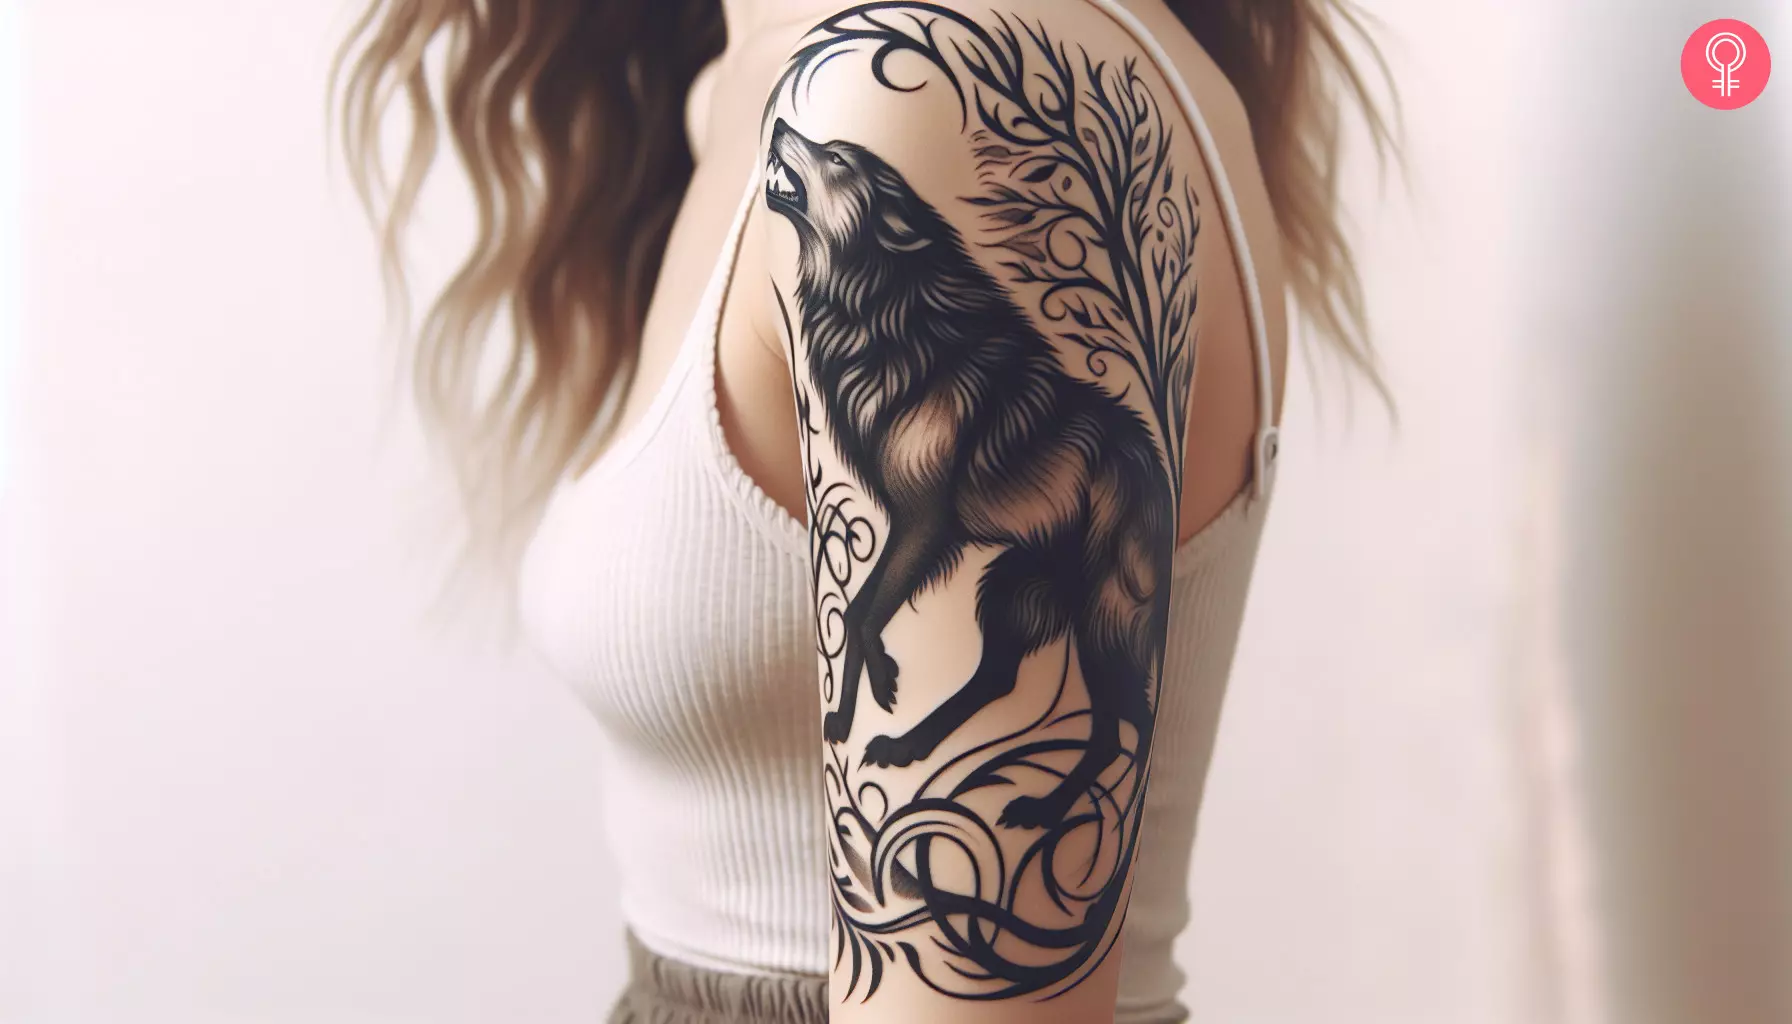 Fenrir wolf tattoo on the upper arm